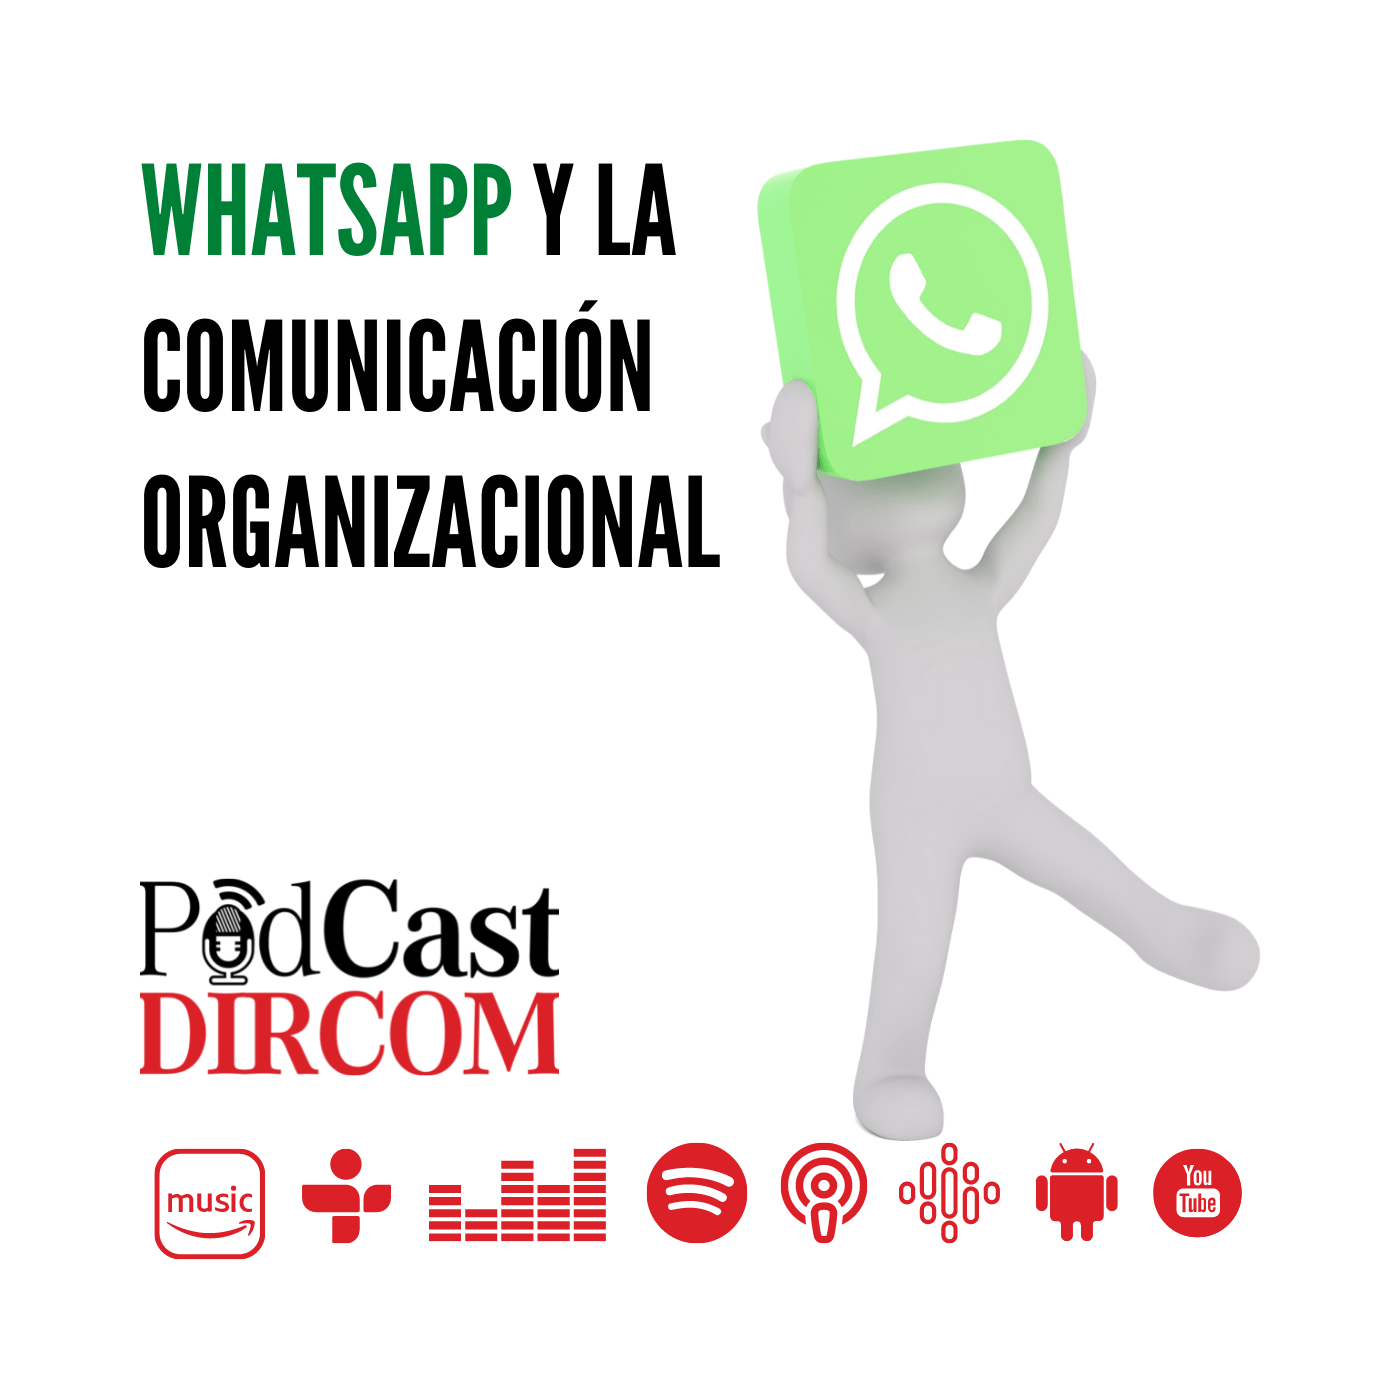 WhatsApp y la Comunicación Organizacional